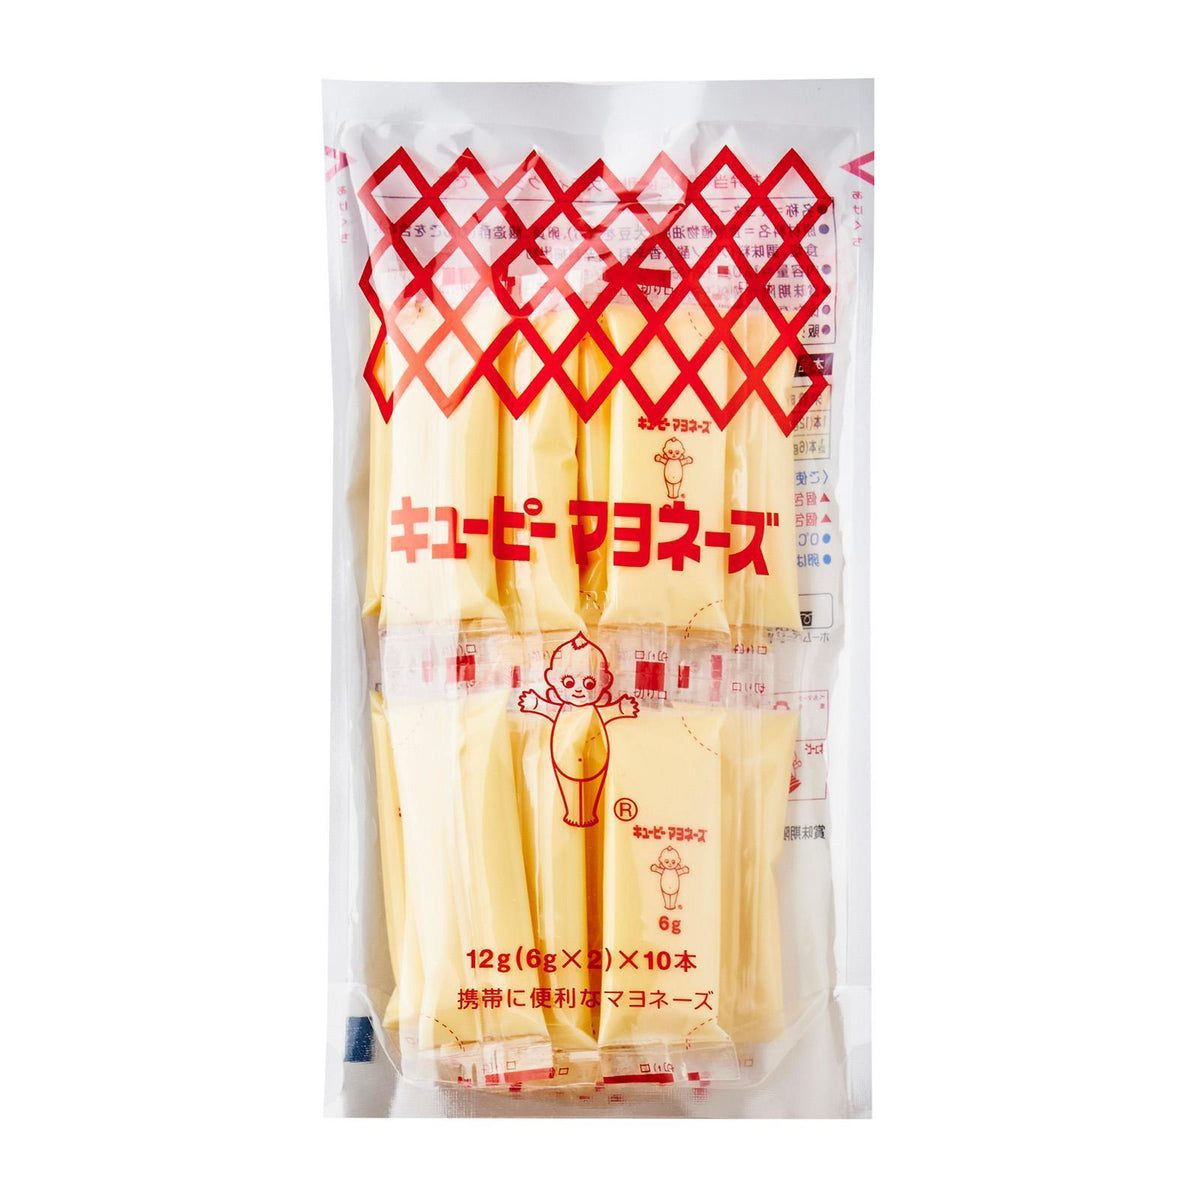 Kewpie　x　Japan　Japan　gm　Mayonnaise　Gm　Grocery　Easy　キユーピー　120　—　Foods　Online　(6　20　Pkt)　Honeydaes　マヨネーズ　Pack